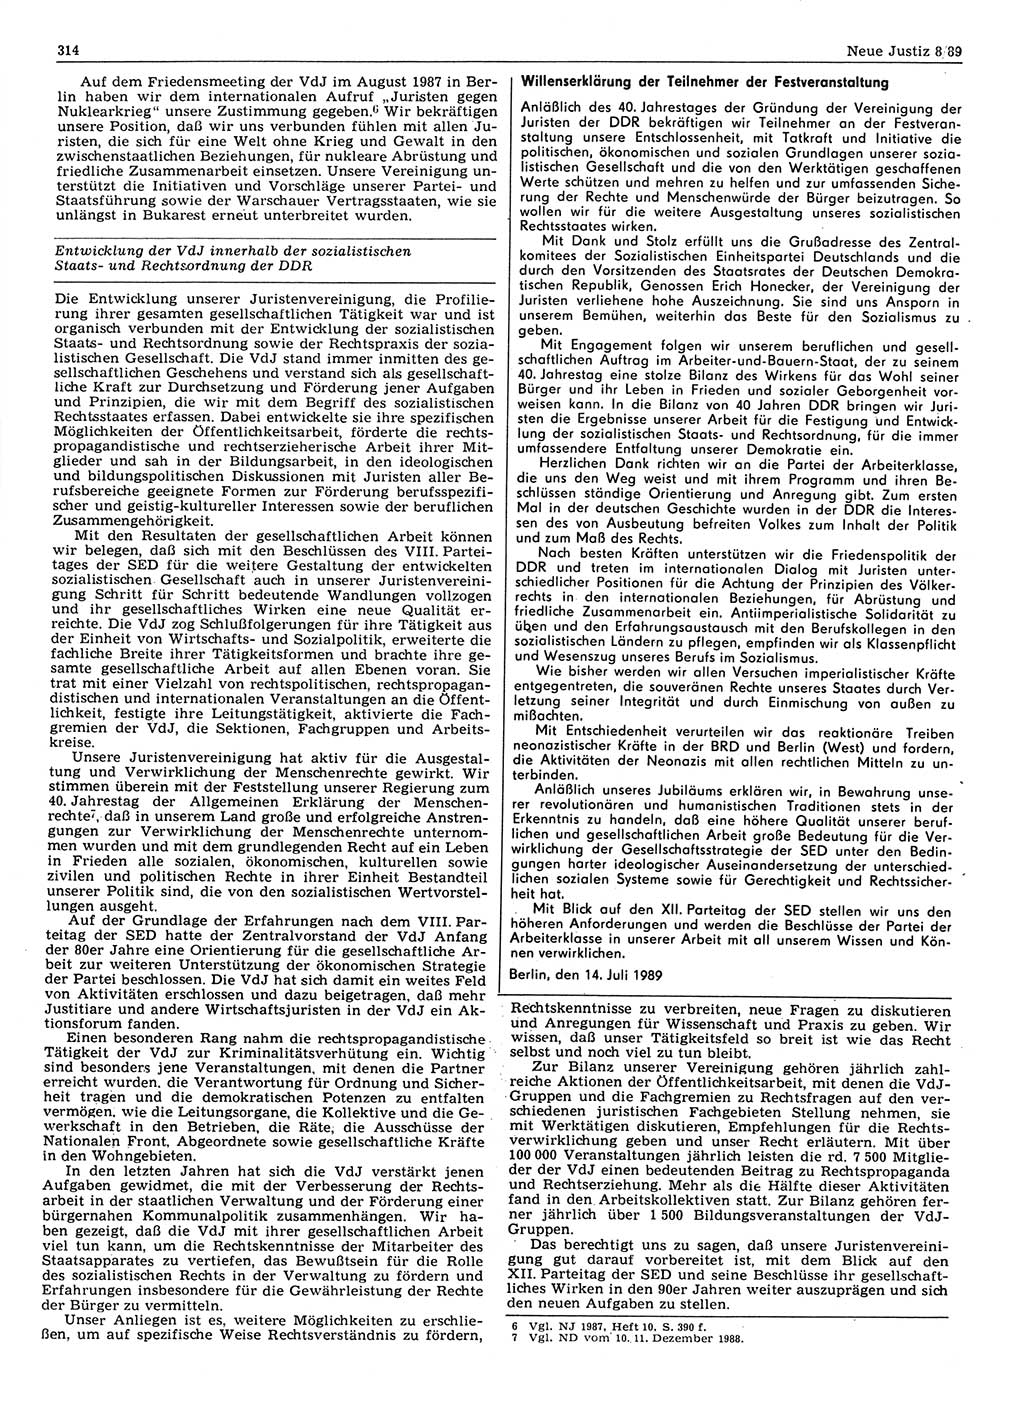 Neue Justiz (NJ), Zeitschrift für sozialistisches Recht und Gesetzlichkeit [Deutsche Demokratische Republik (DDR)], 43. Jahrgang 1989, Seite 314 (NJ DDR 1989, S. 314)